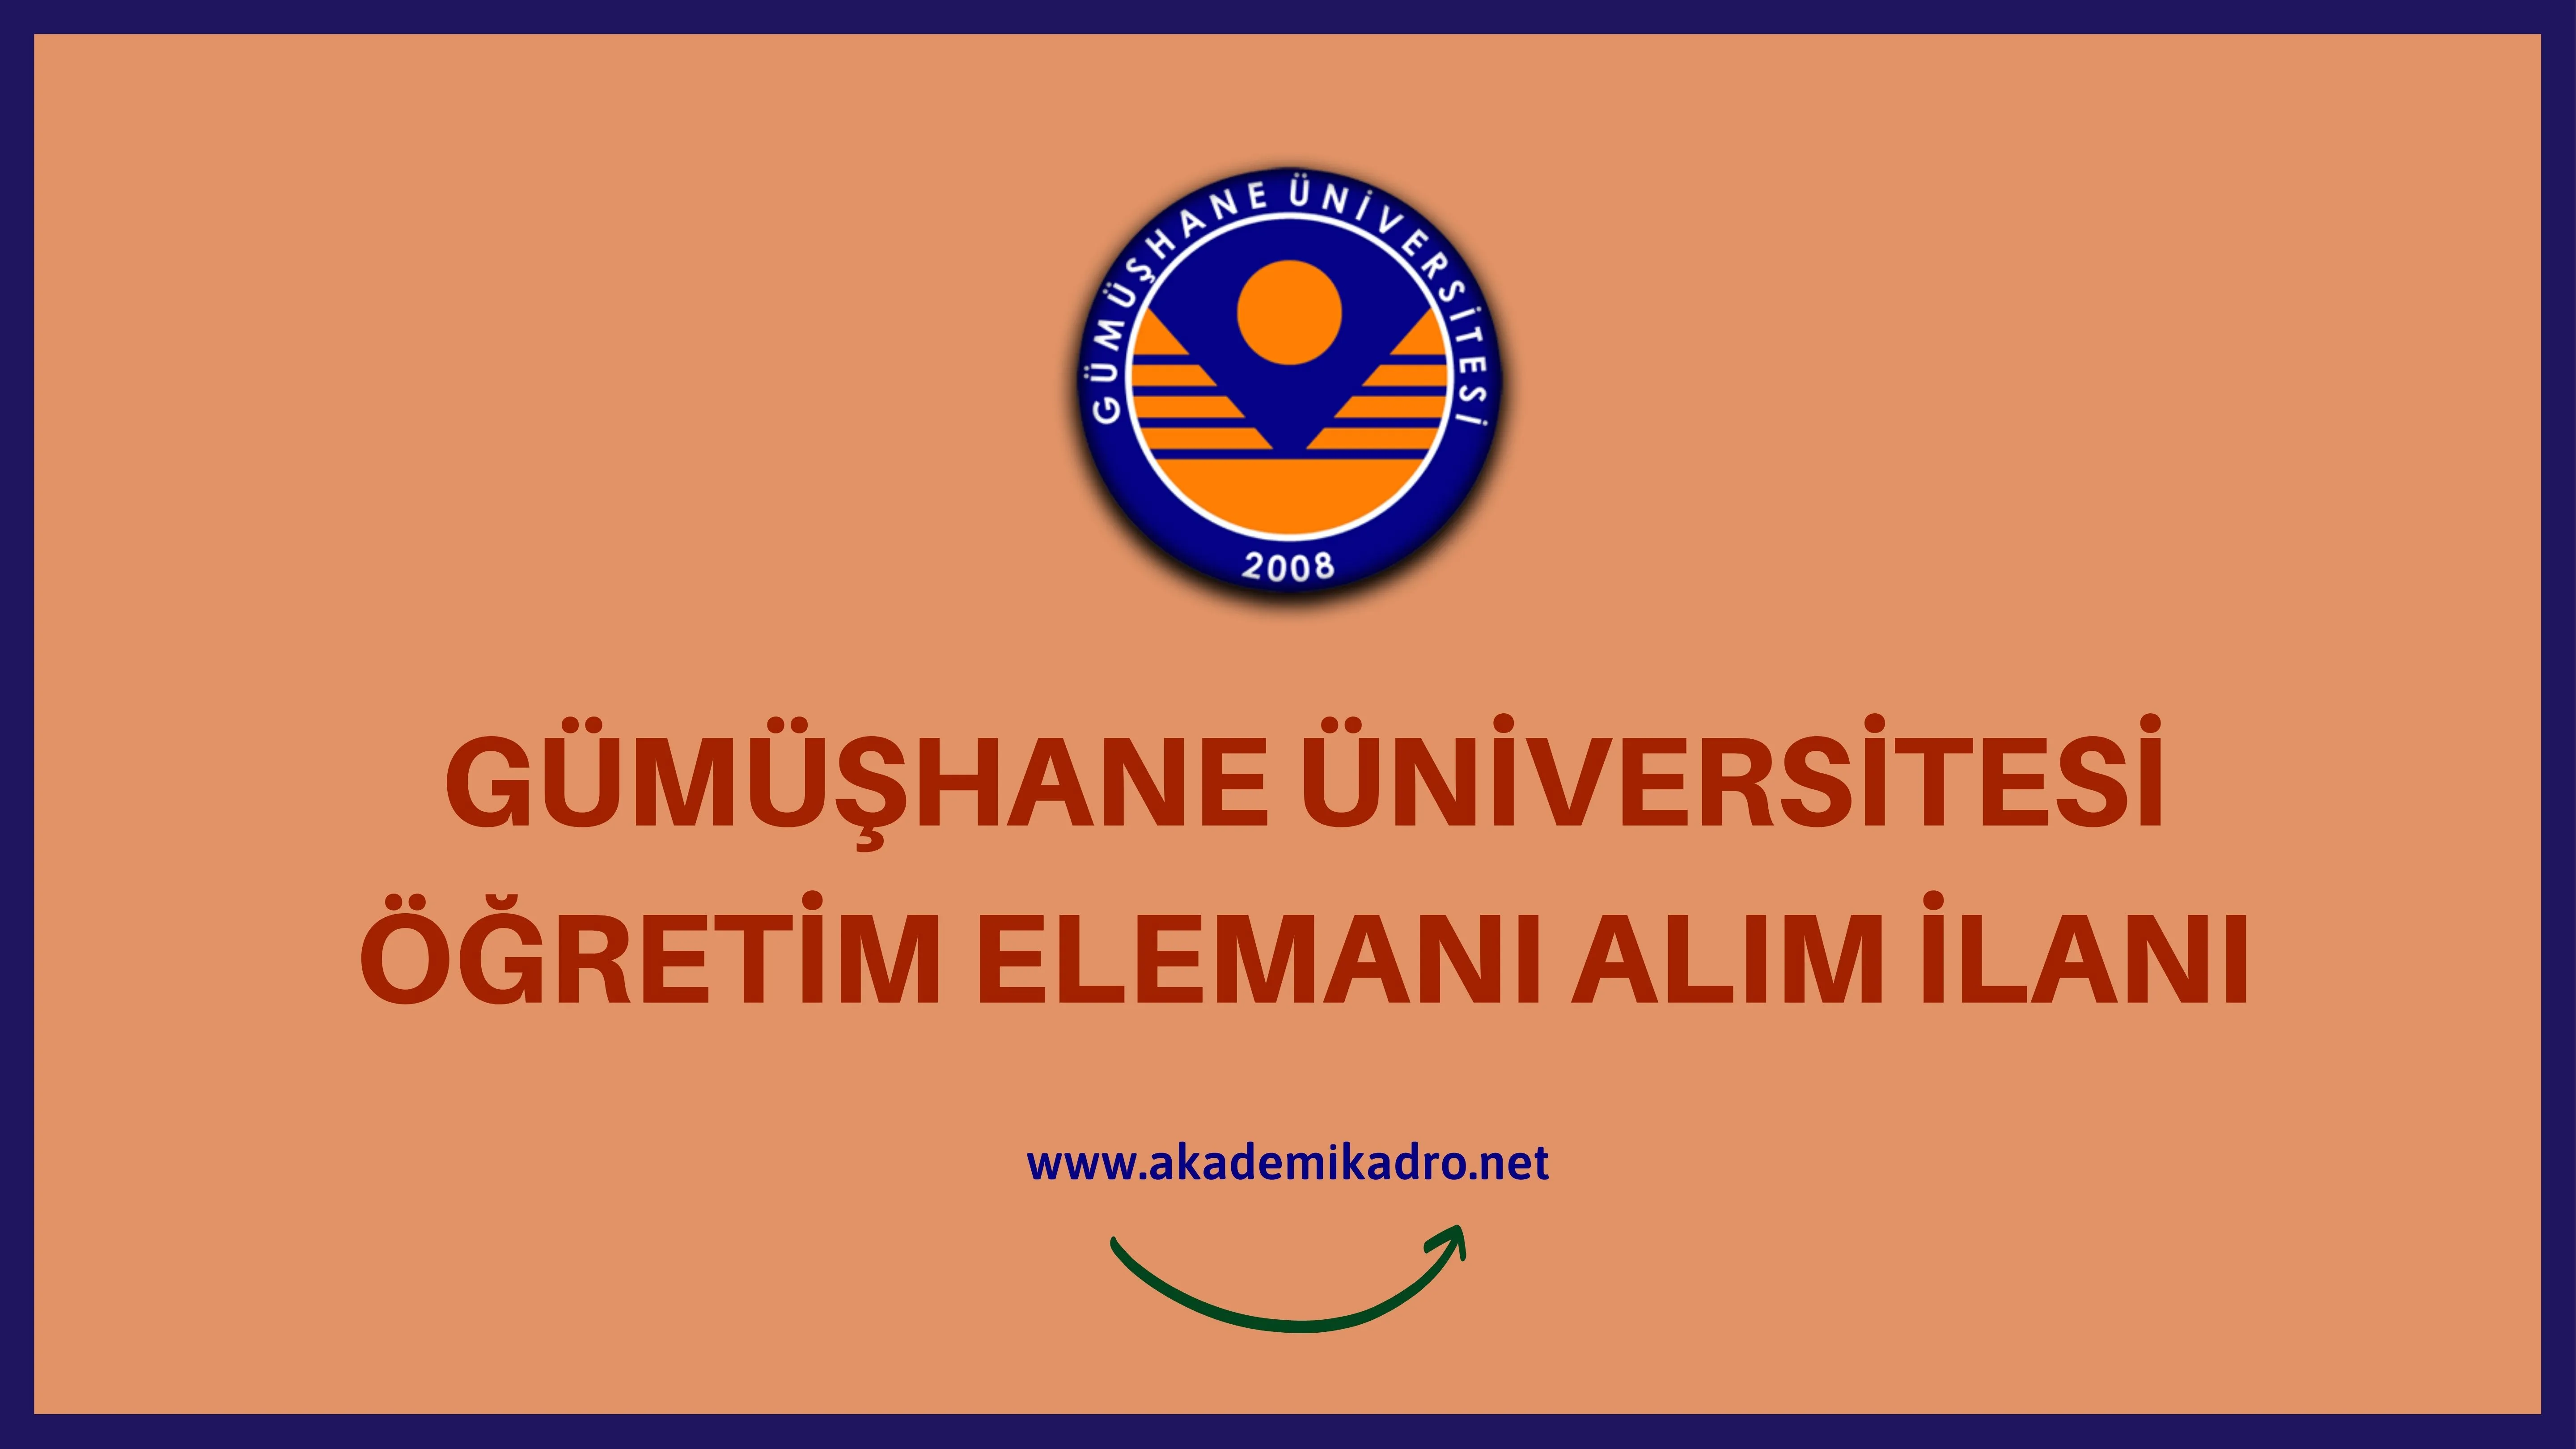 Gümüşhane Üniversitesi 2 Öğretim görevlisi, 6 Araştırma görevlisi ve 4 Öğretim üyesi alacak.